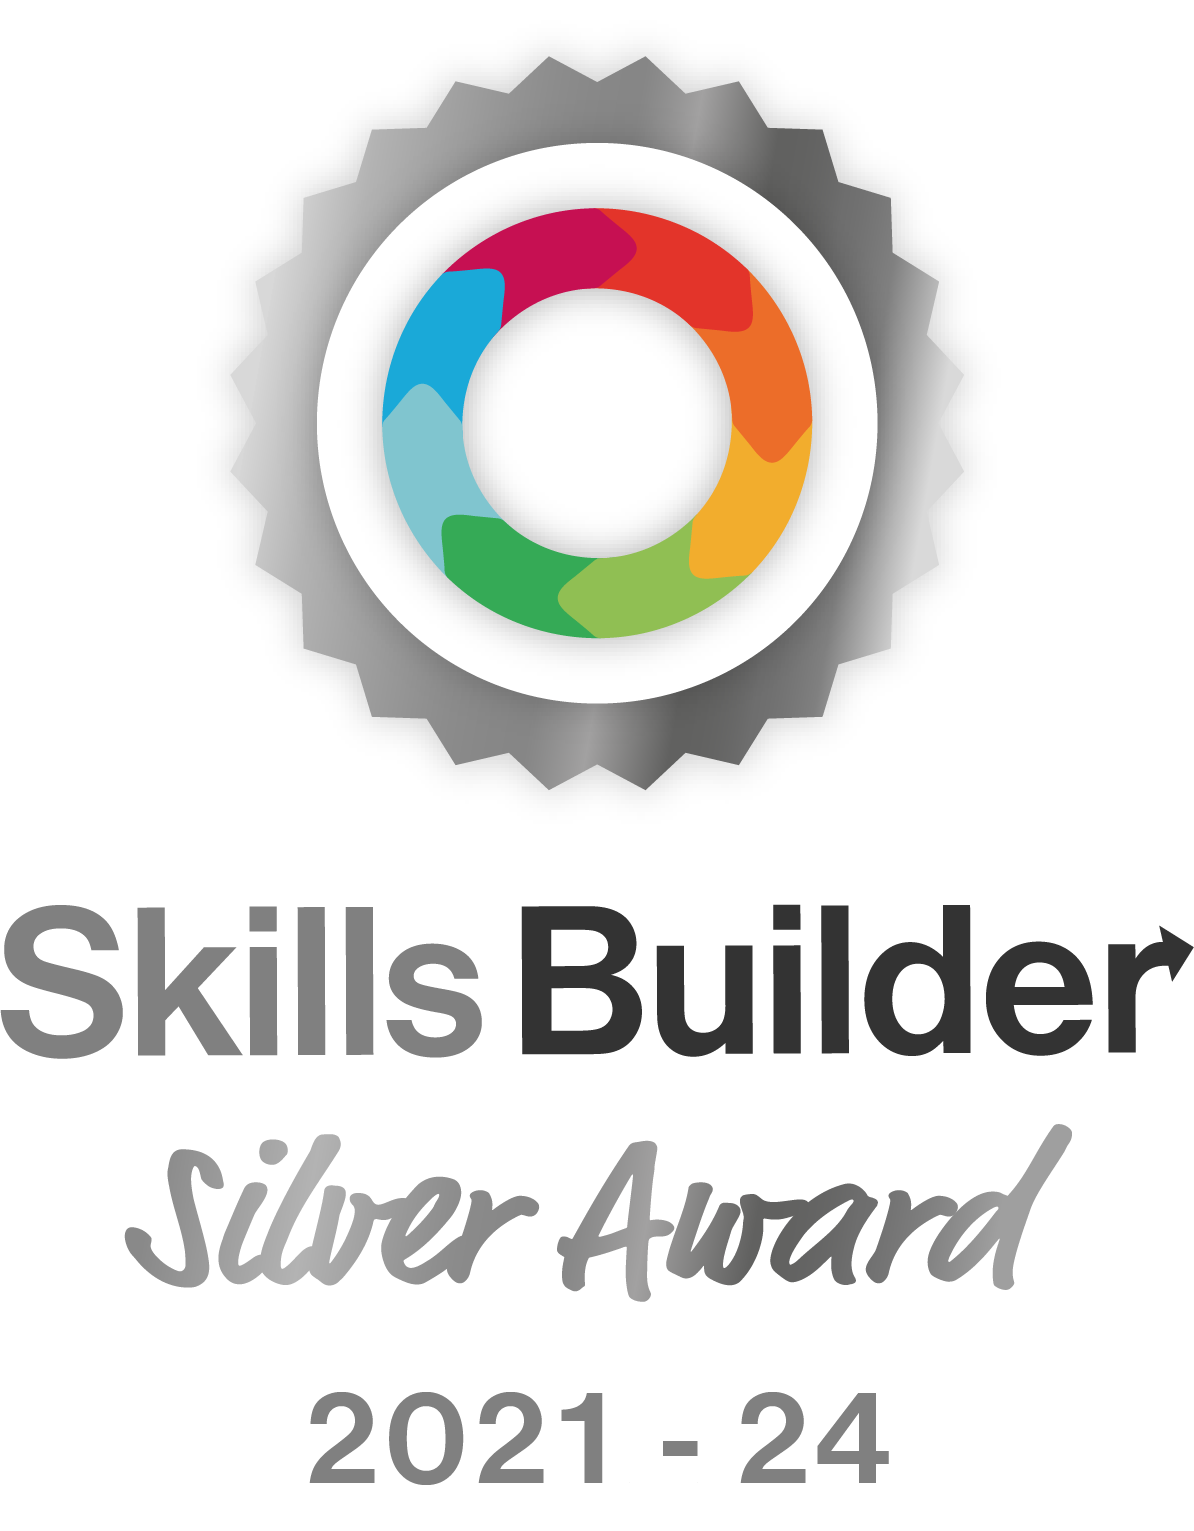 Skills Builder Silver Award